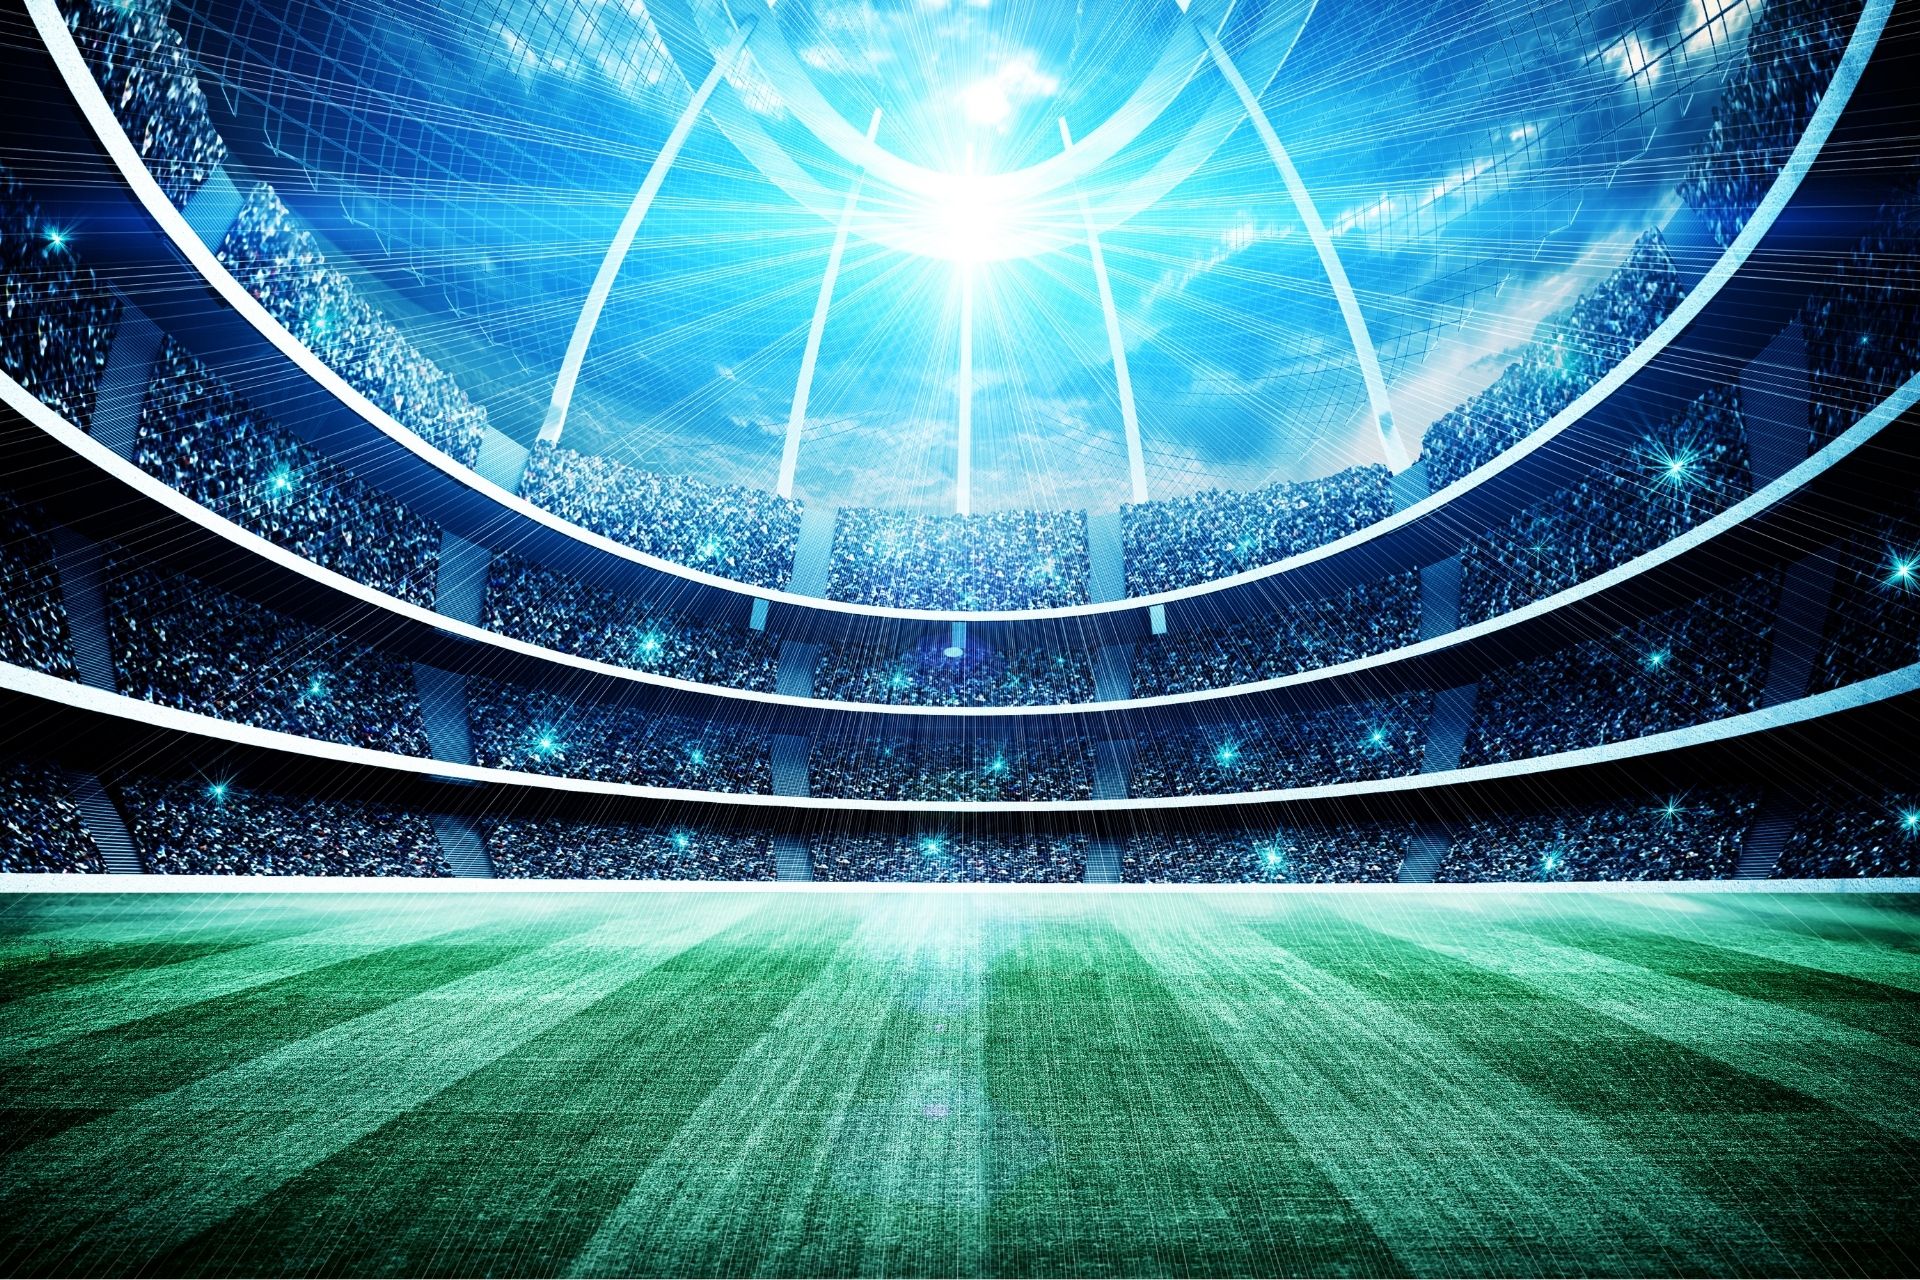 Dnia 2022-04-09 19:00 na obiekcie Estadio Santiago Bernabéu odbyło się spotkanie Real Madrid - Getafe - końcowy wynik 2-0